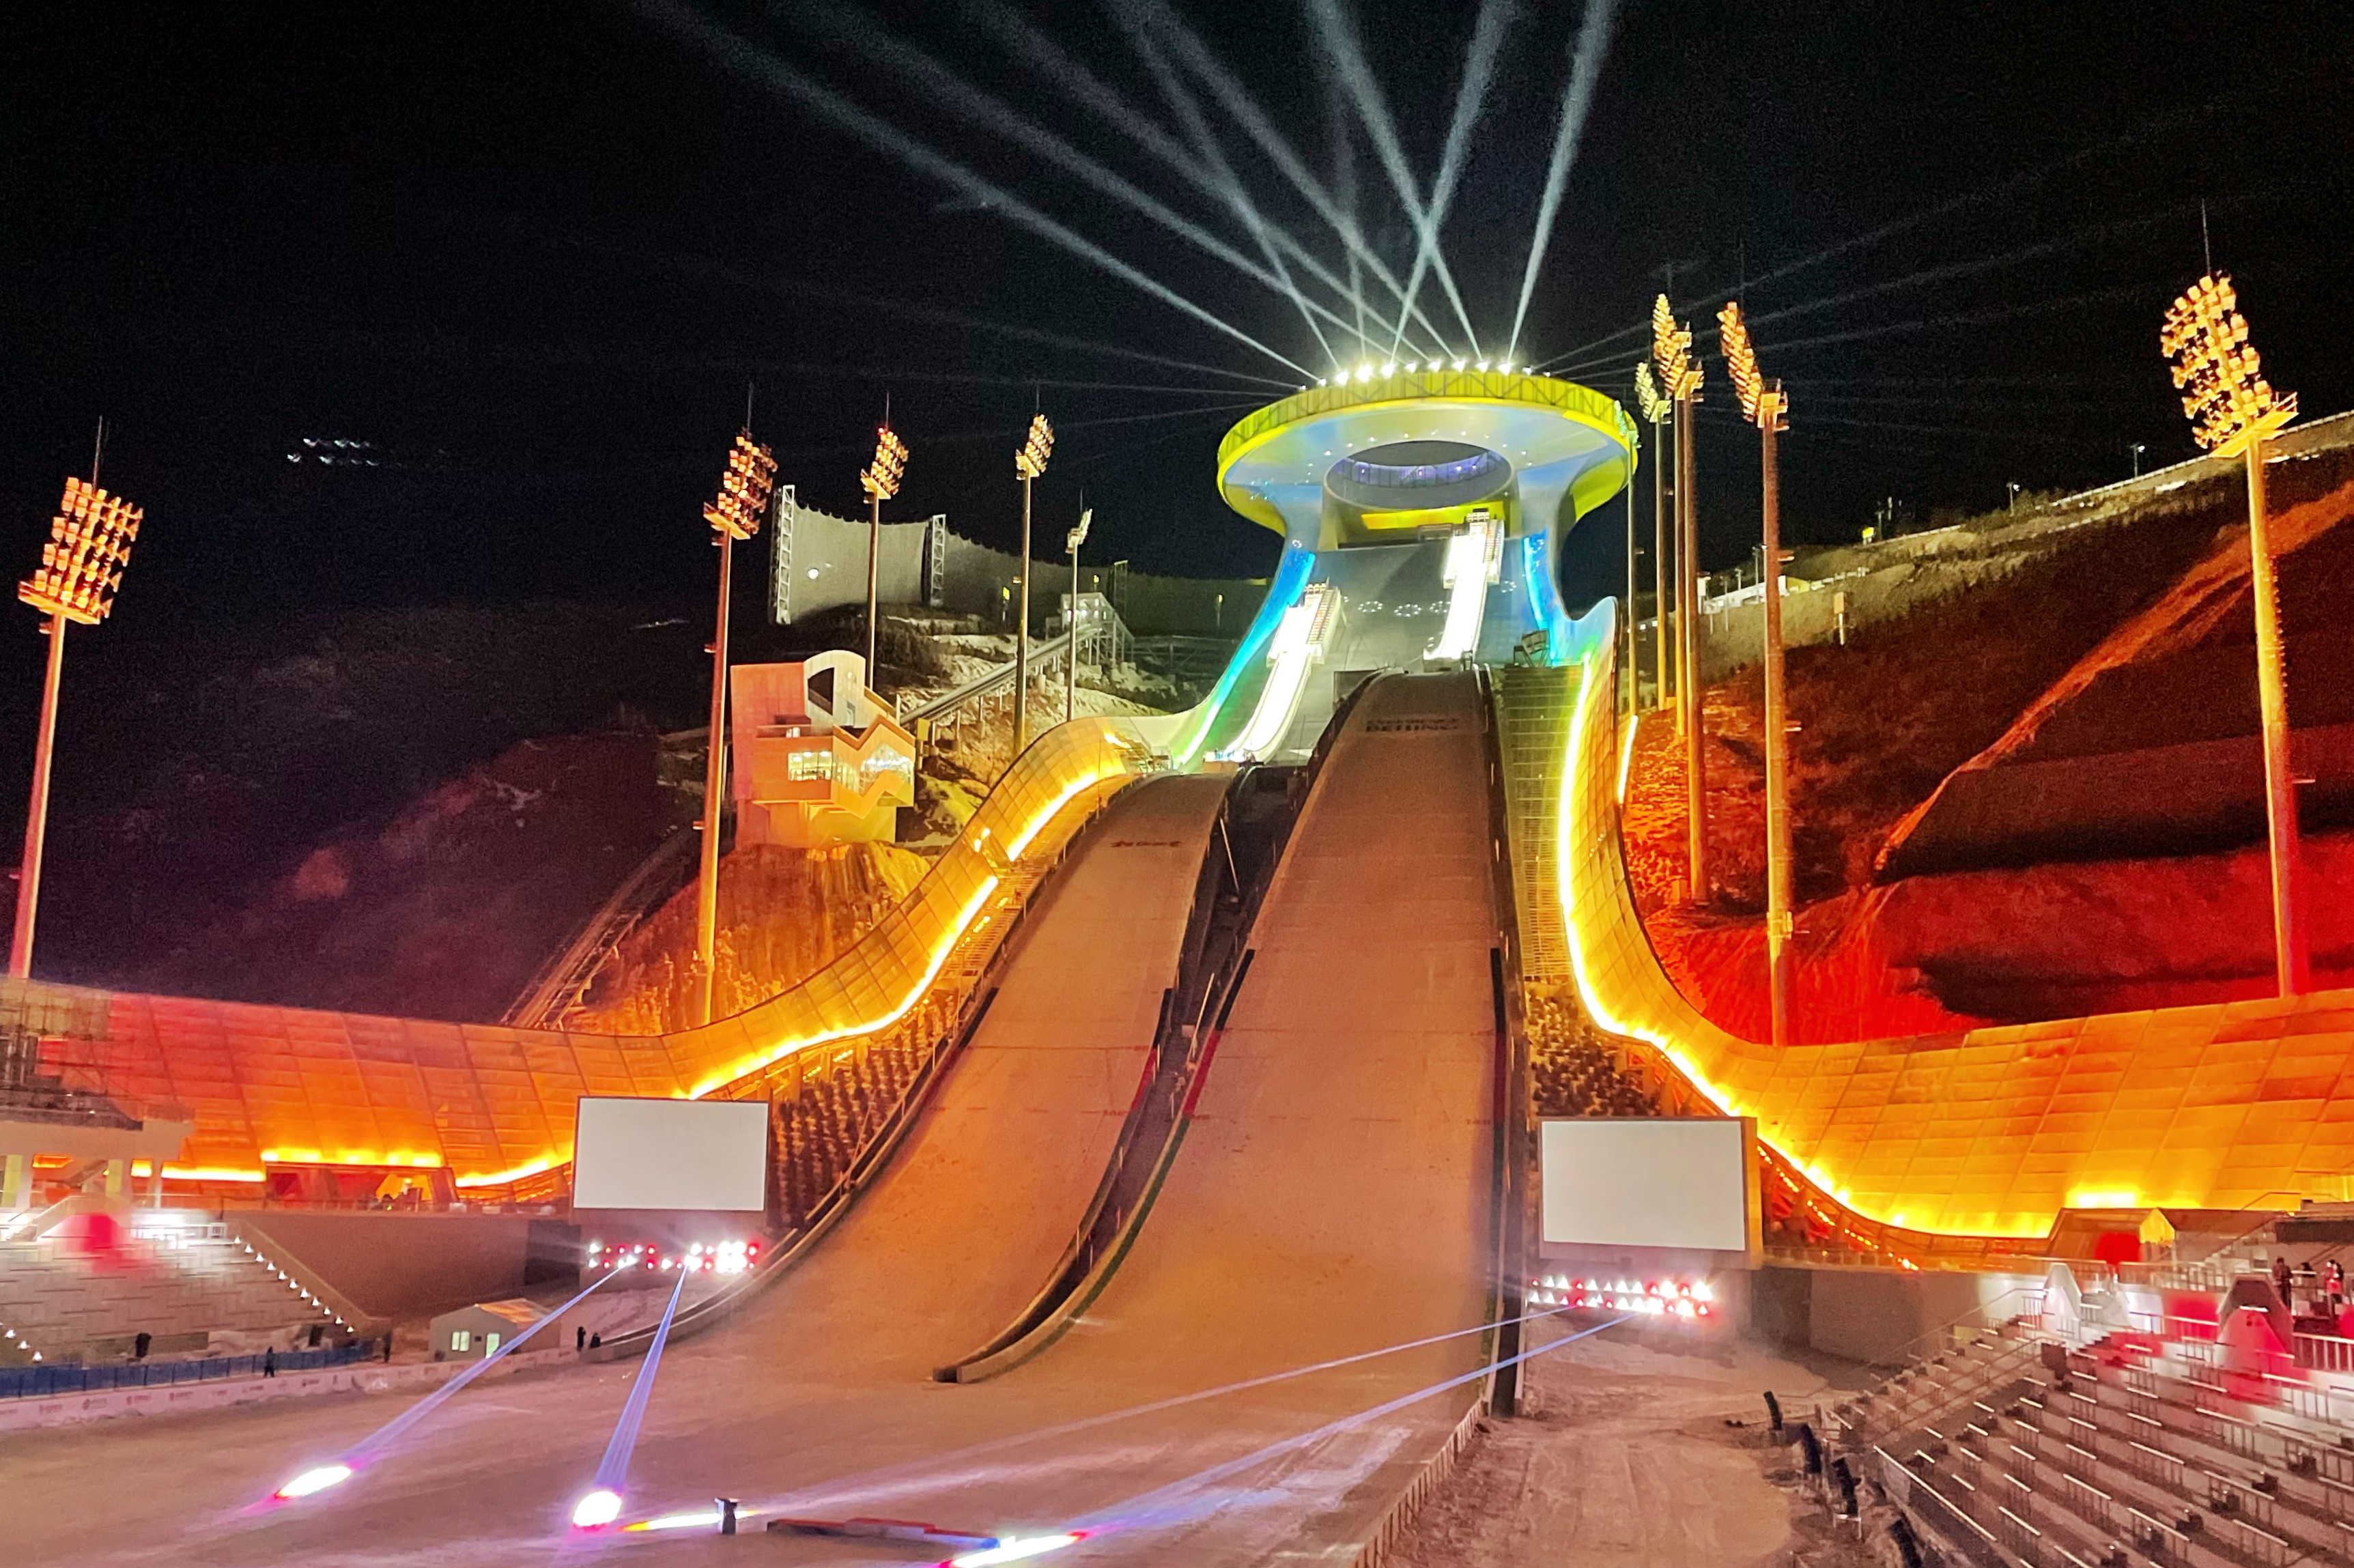 国家跳台滑雪中心赛后上演灯光秀表演